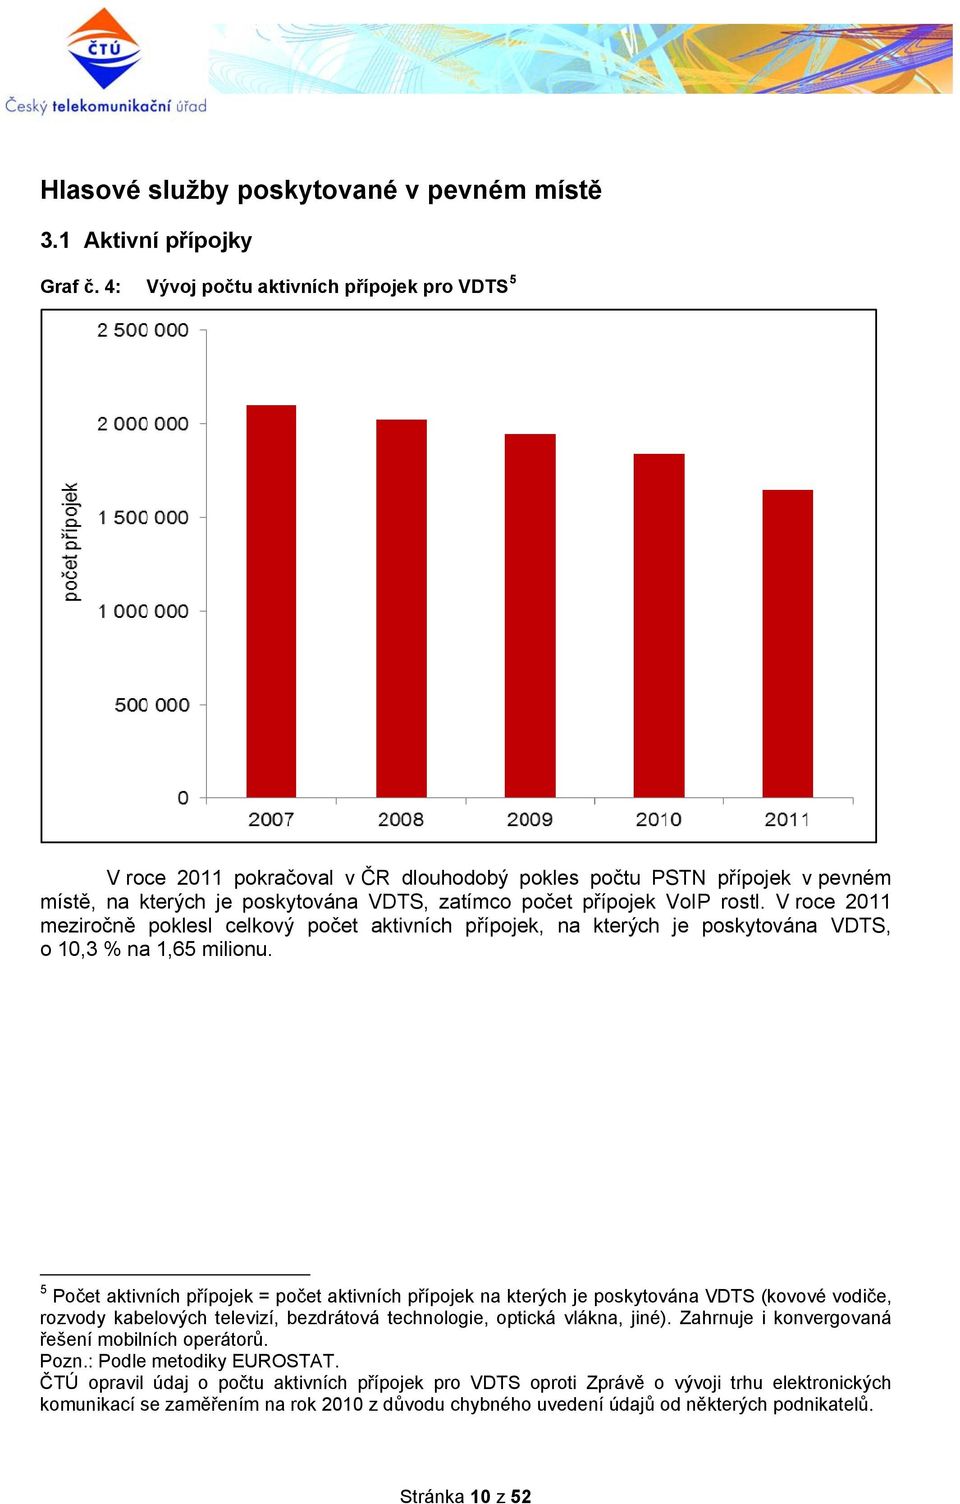 V roce 2011 meziročně poklesl celkový počet aktivních přípojek, na kterých je poskytována VDTS, o 10,3 % na 1,65 milionu.